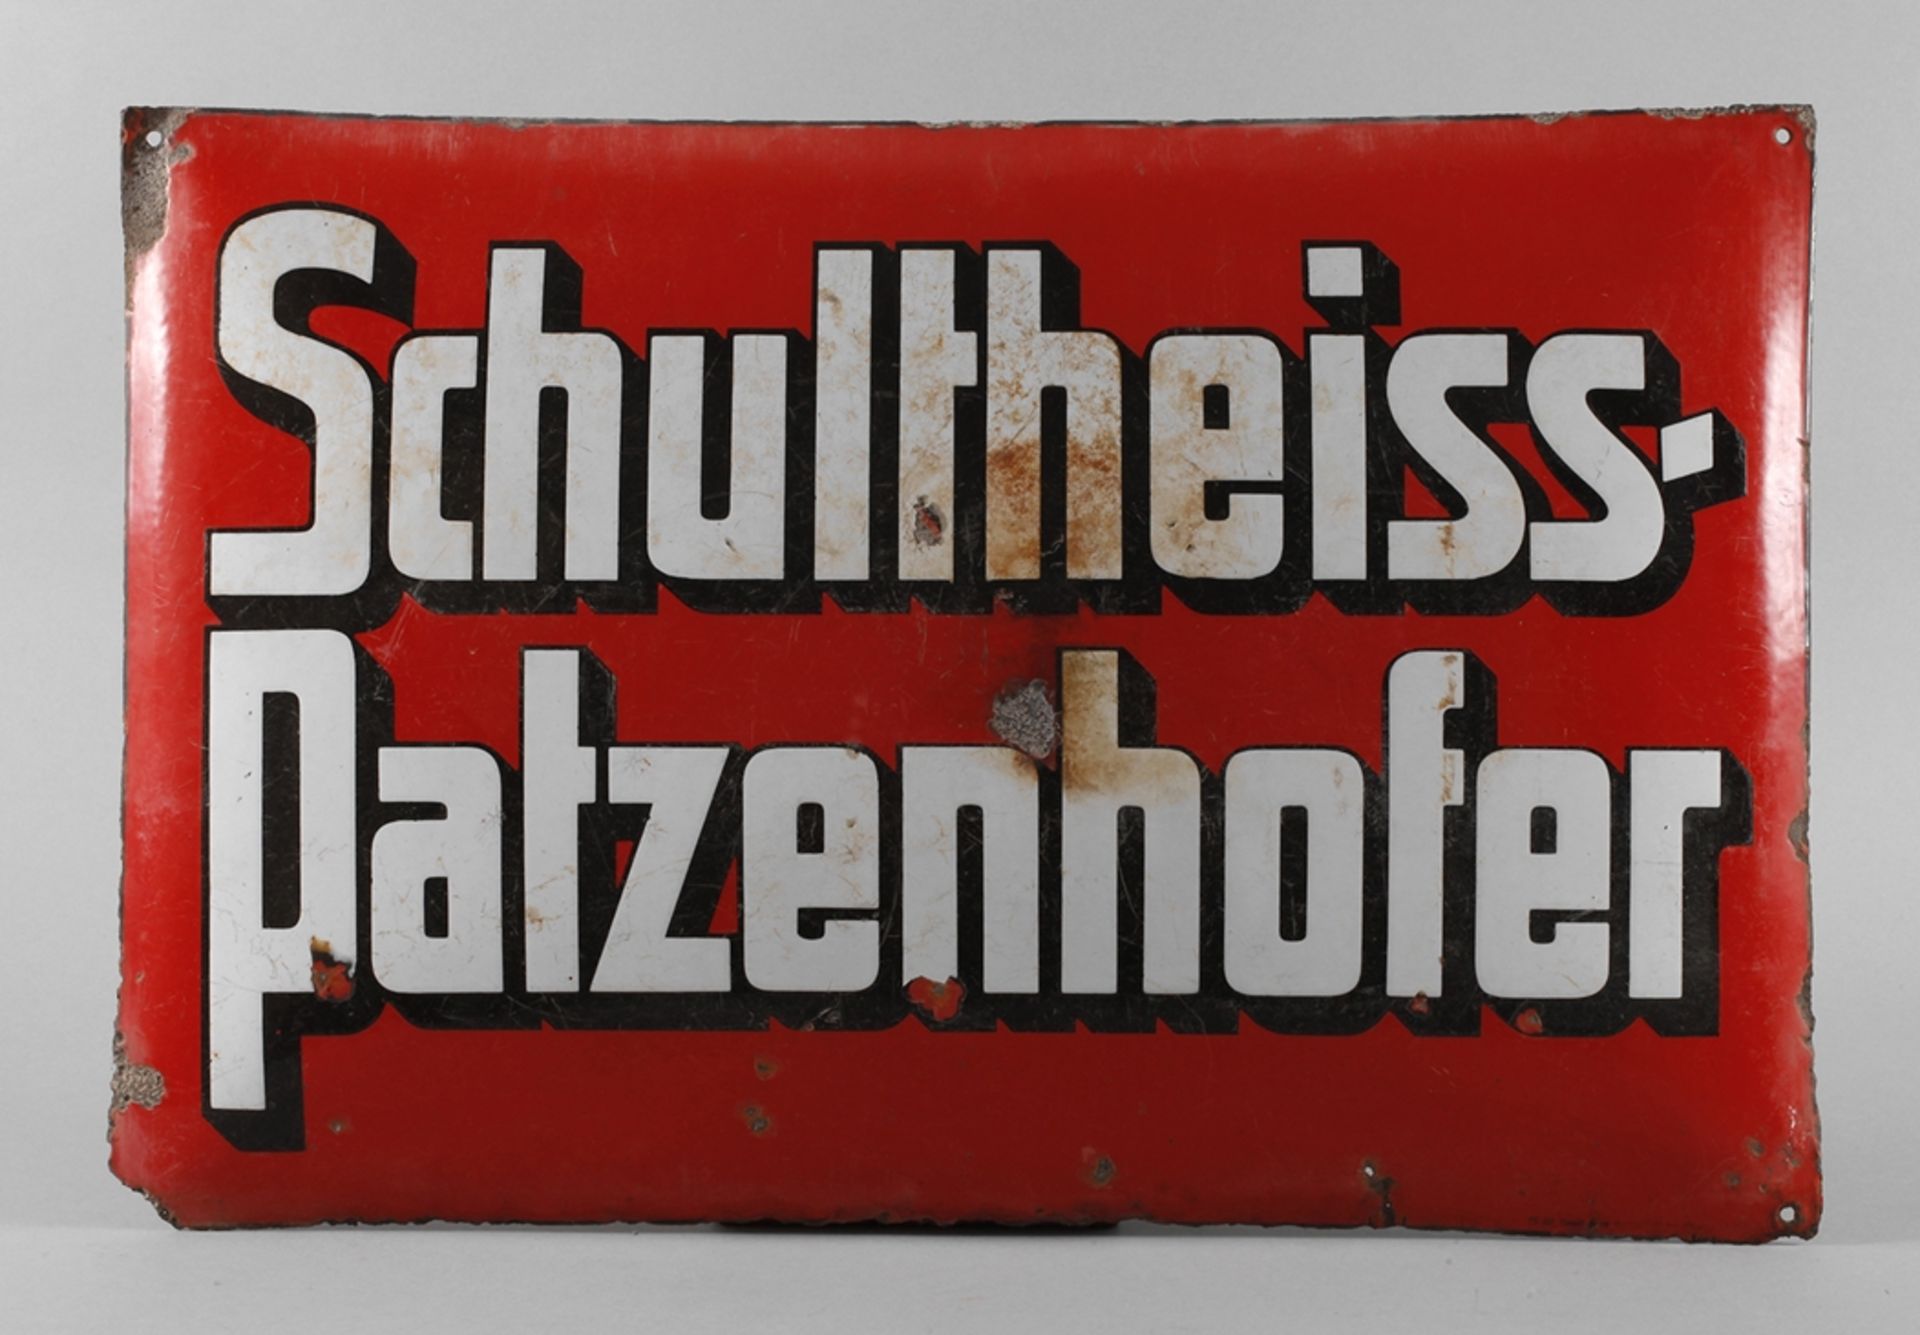 Emailschild Schultheiss-Patzenhofer 1930er Jahre, Herstellervermerk Emaillierwerk Gottfried